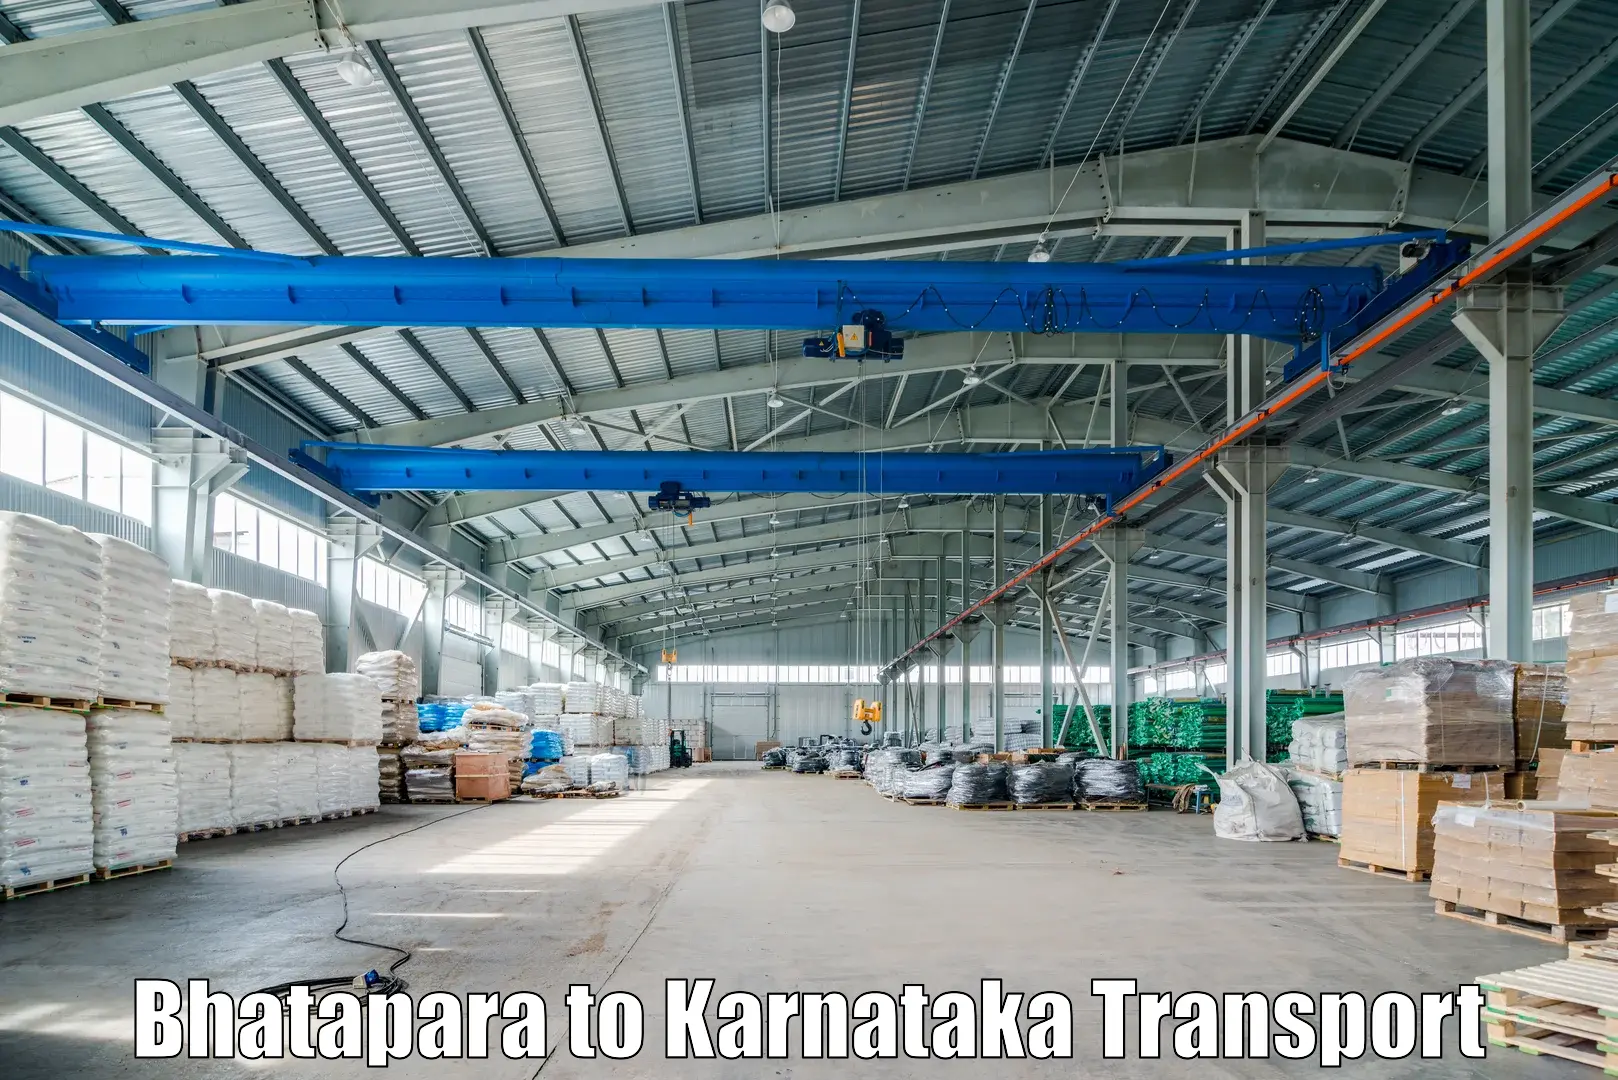 Nearby transport service Bhatapara to Chamarajanagar